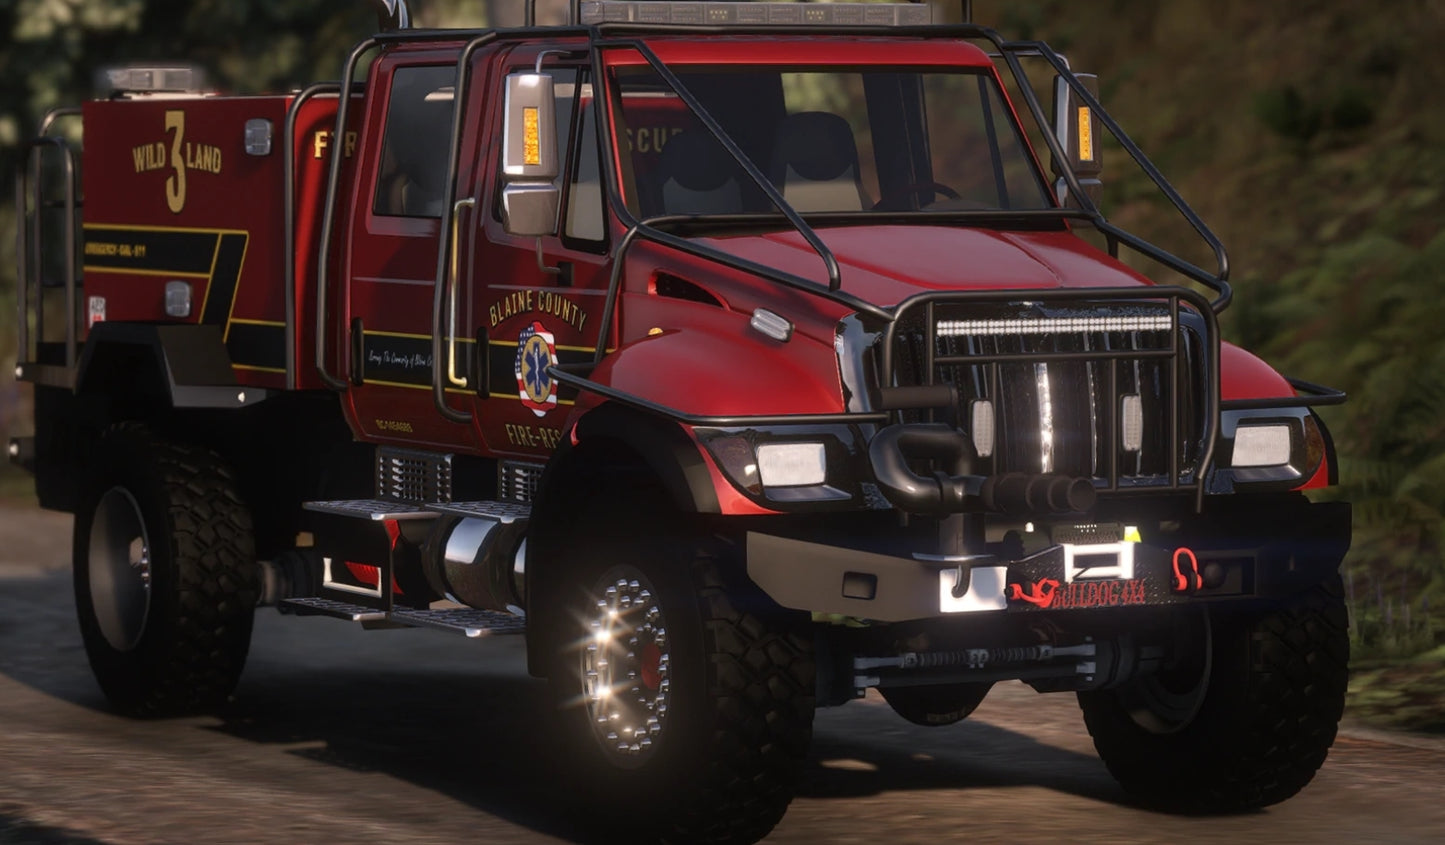 EMS/Fire Bulldog Truck